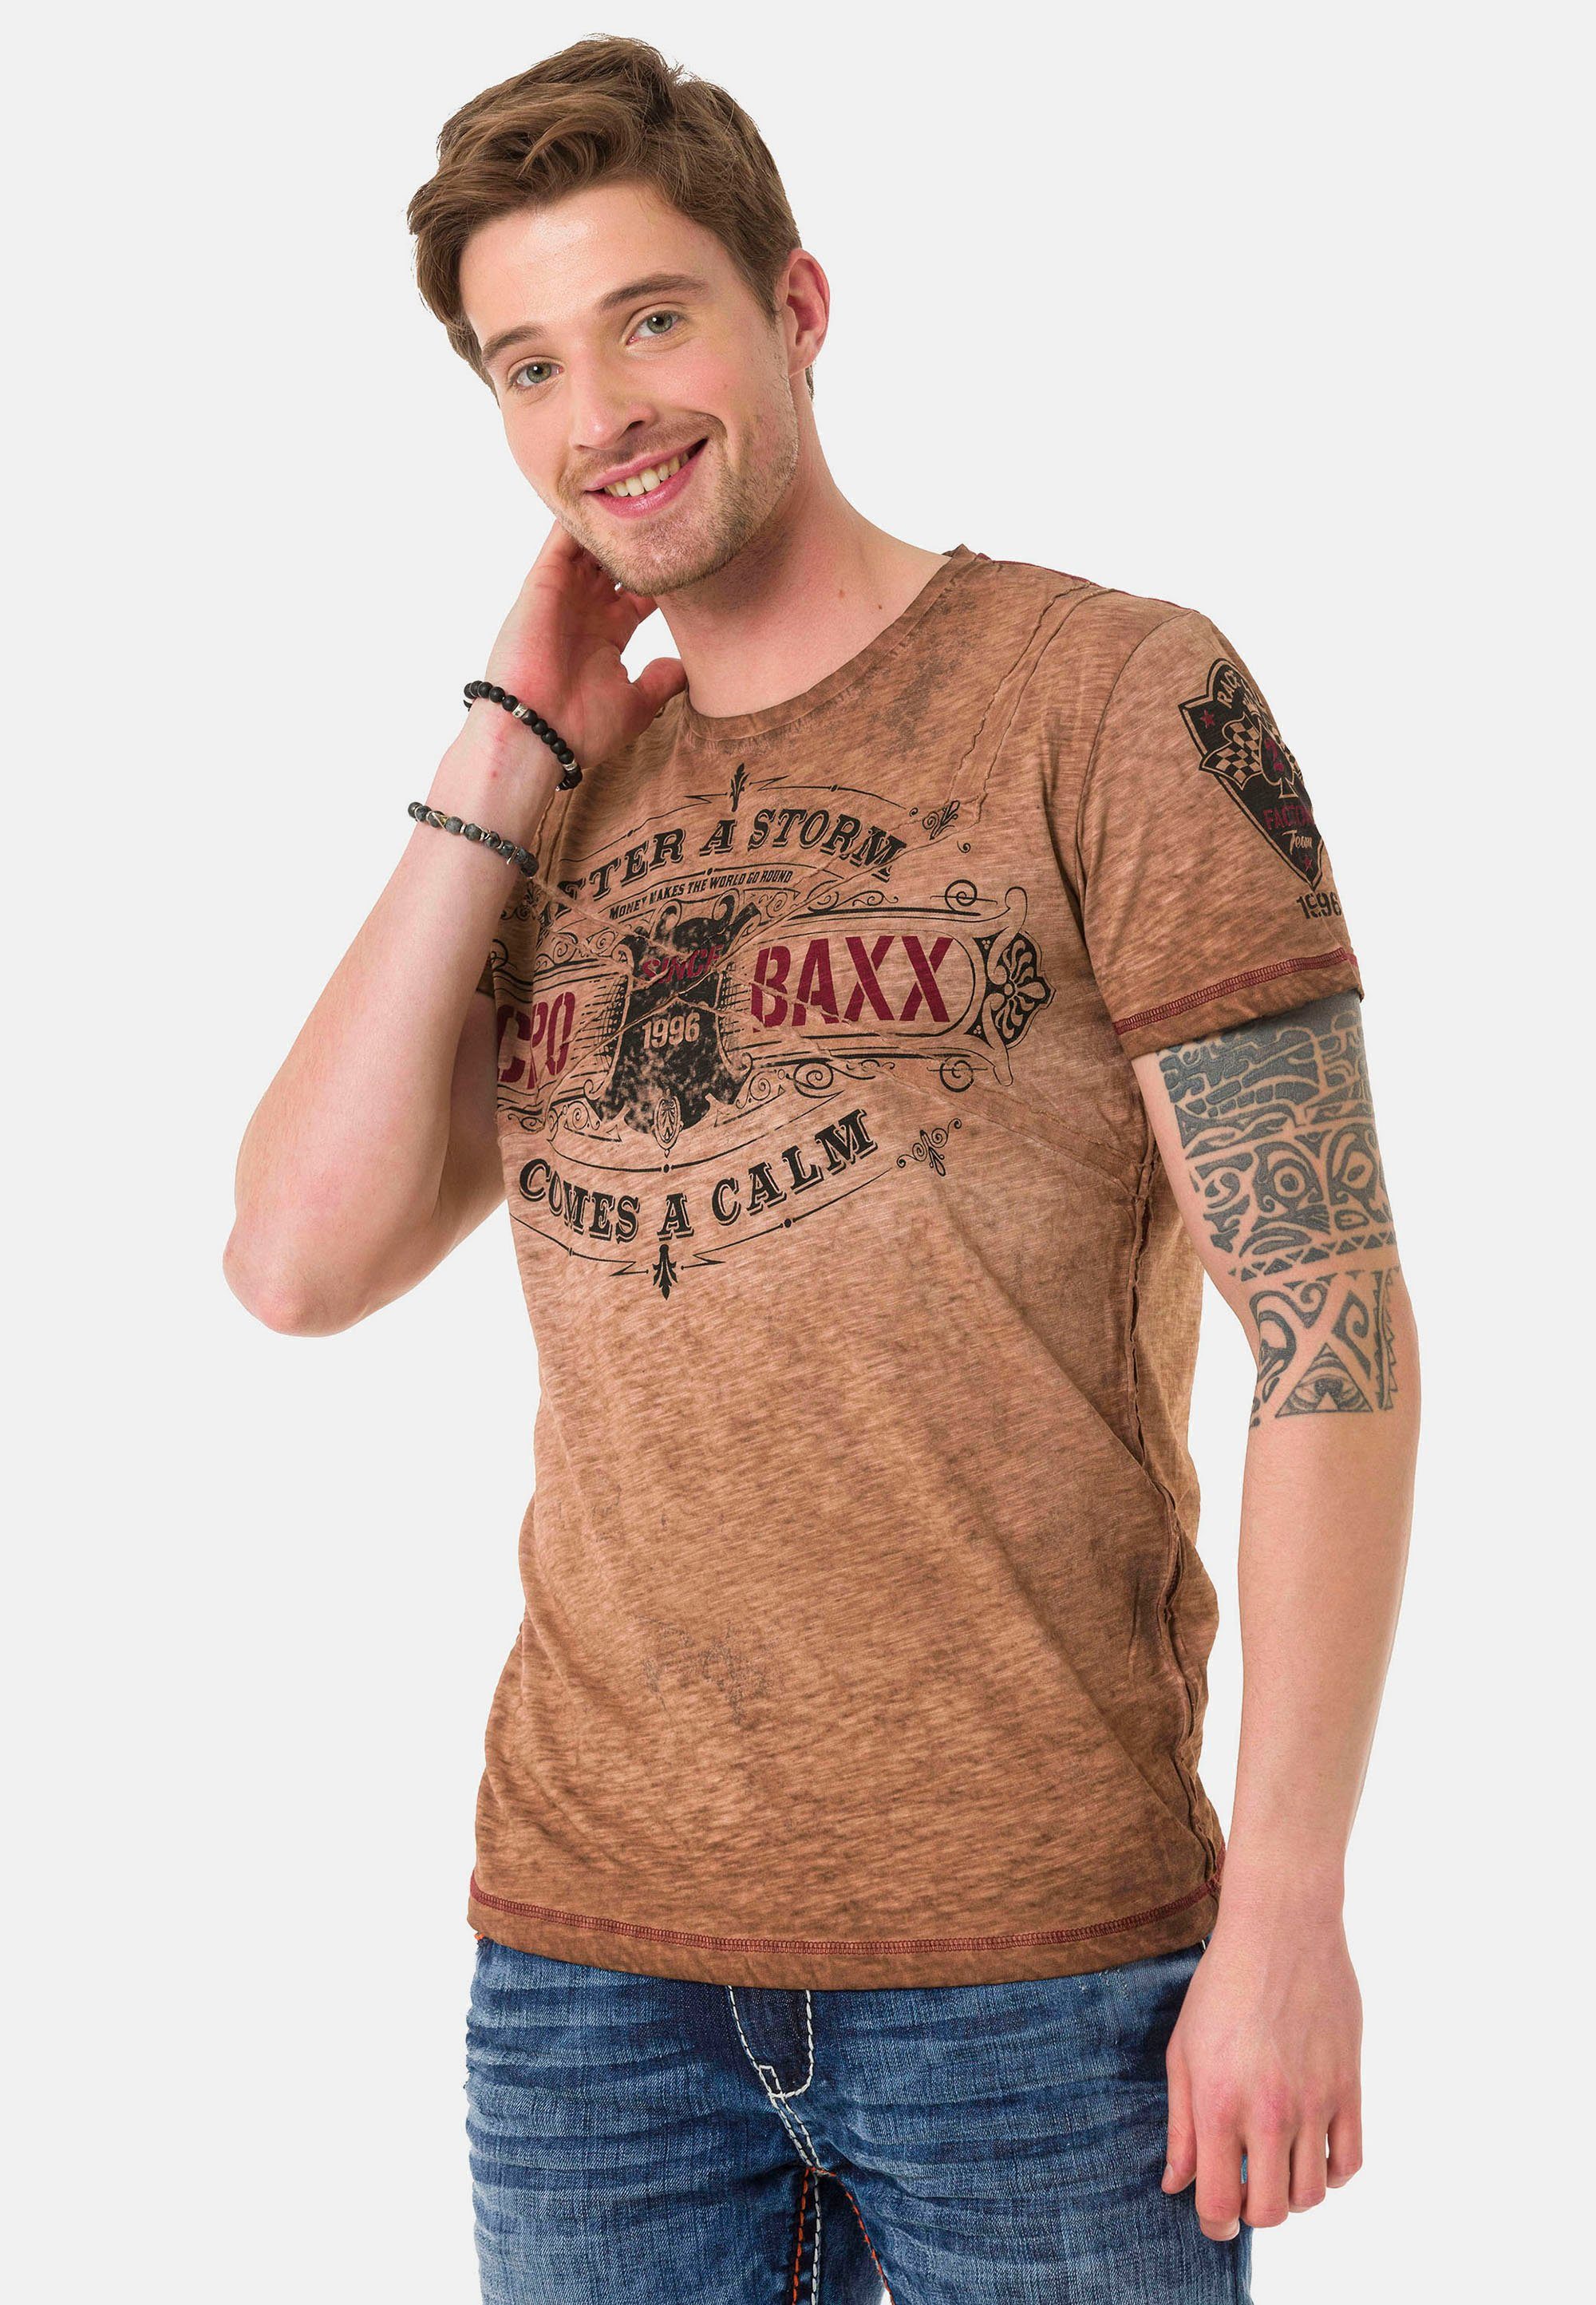 VintageLook Baxx braun & Cipo im T-Shirt